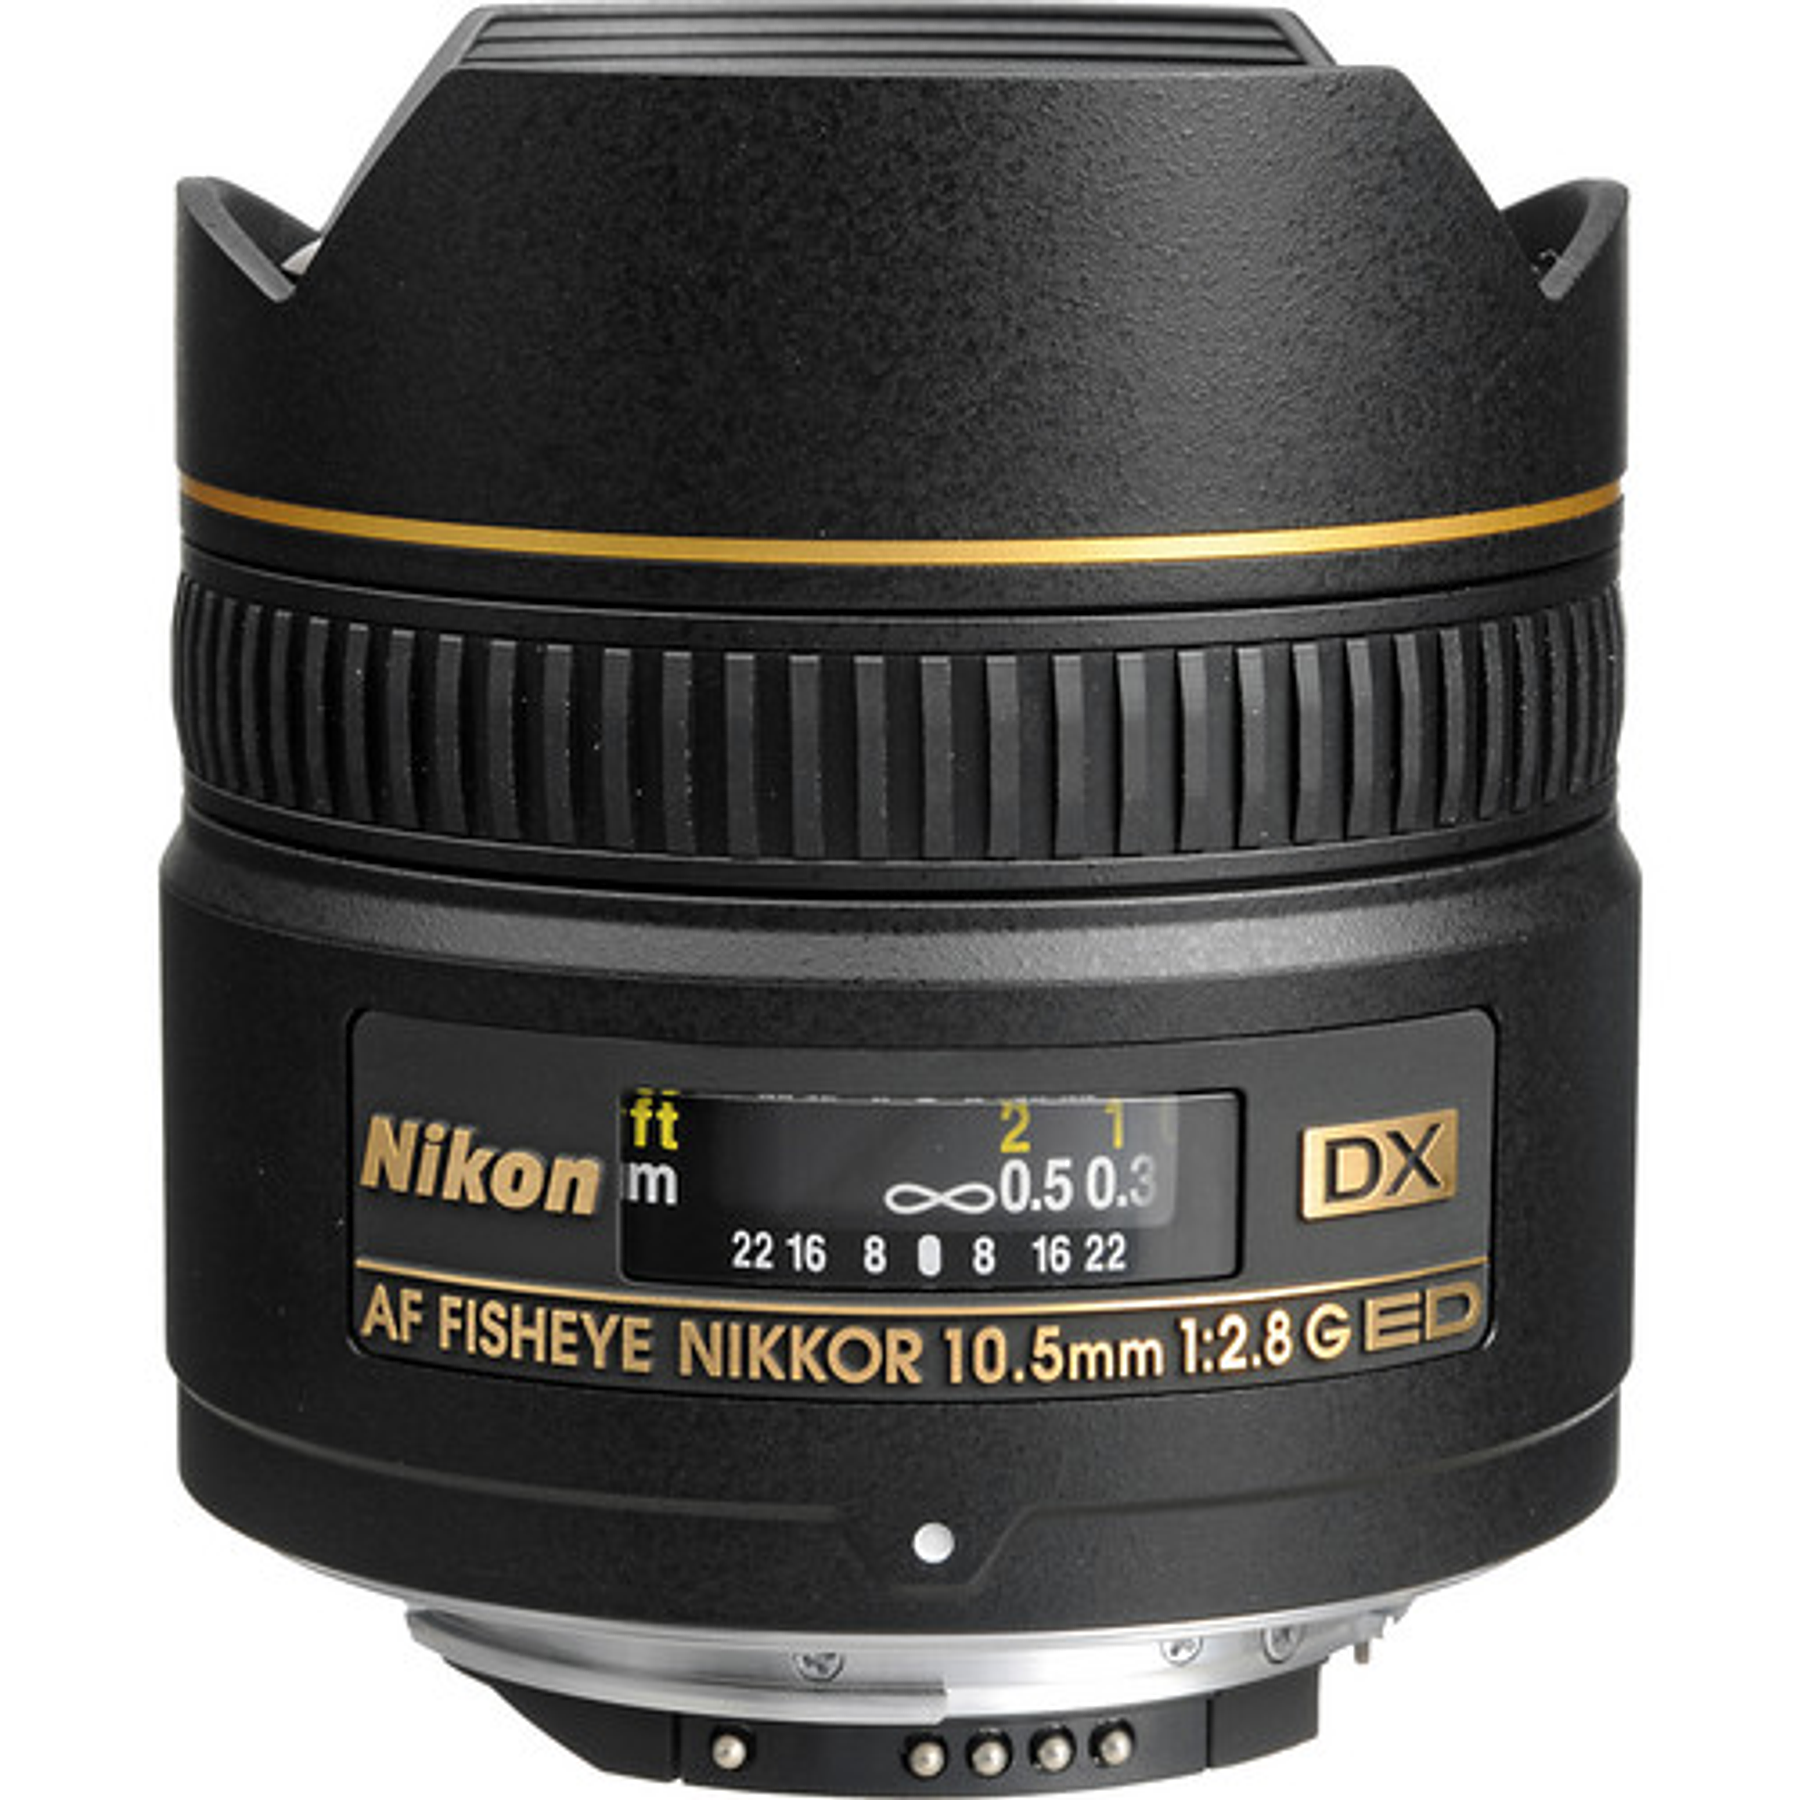 Nikon AF DX Fisheye-NIKKOR 10.5mm f/2.8G ED